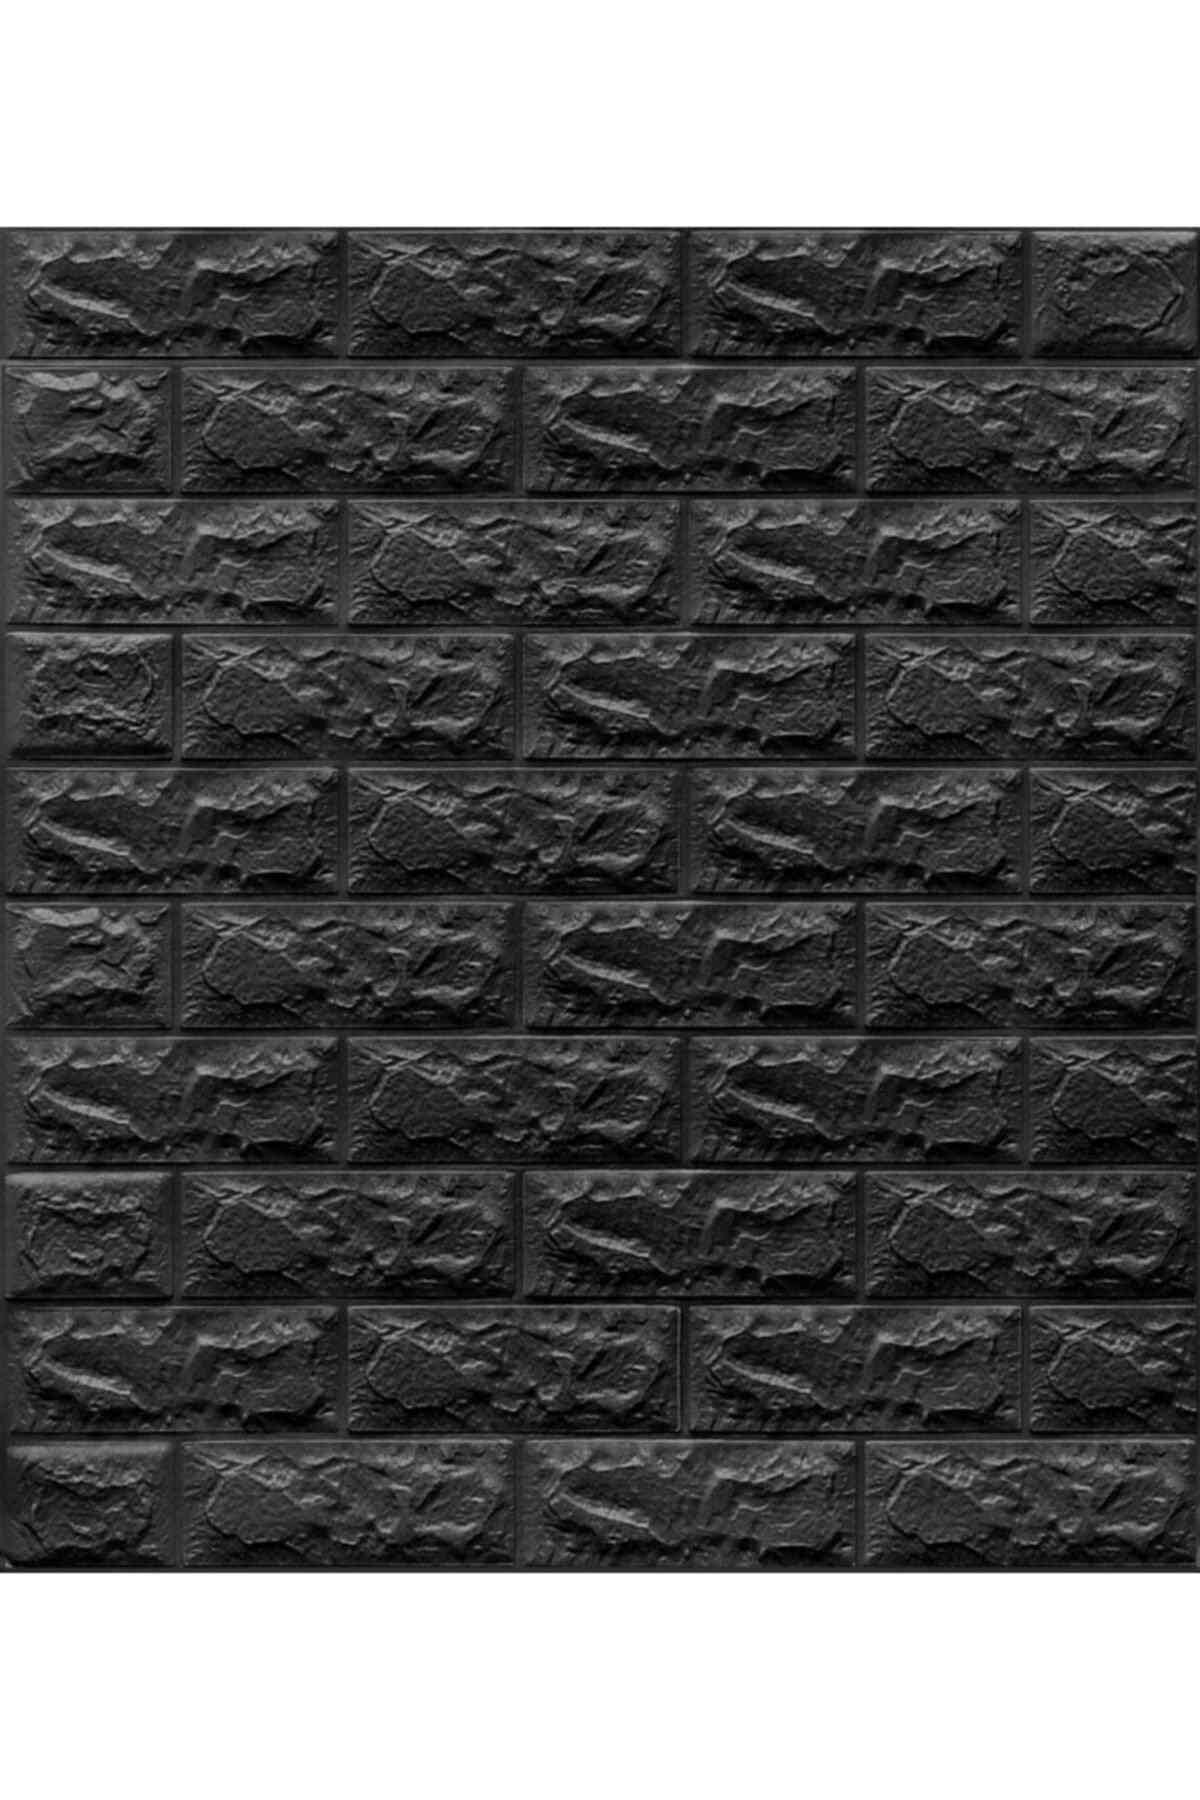 Panel de pared decorativo 3d autoadhesivo negro brillante